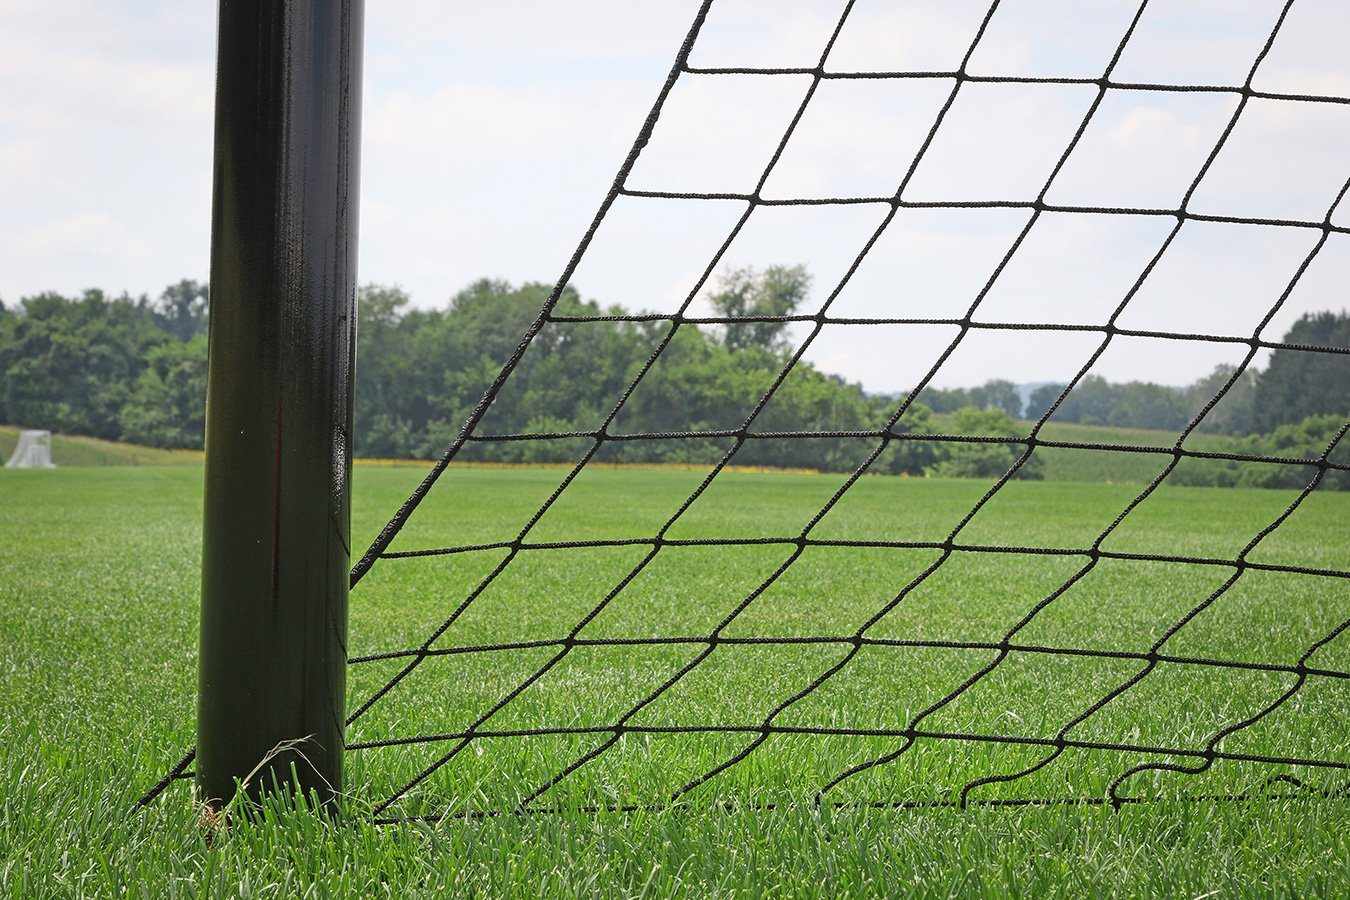 Kwikgoal Soccer Backstop System | 7B101 Field equipment Kwikgoal 